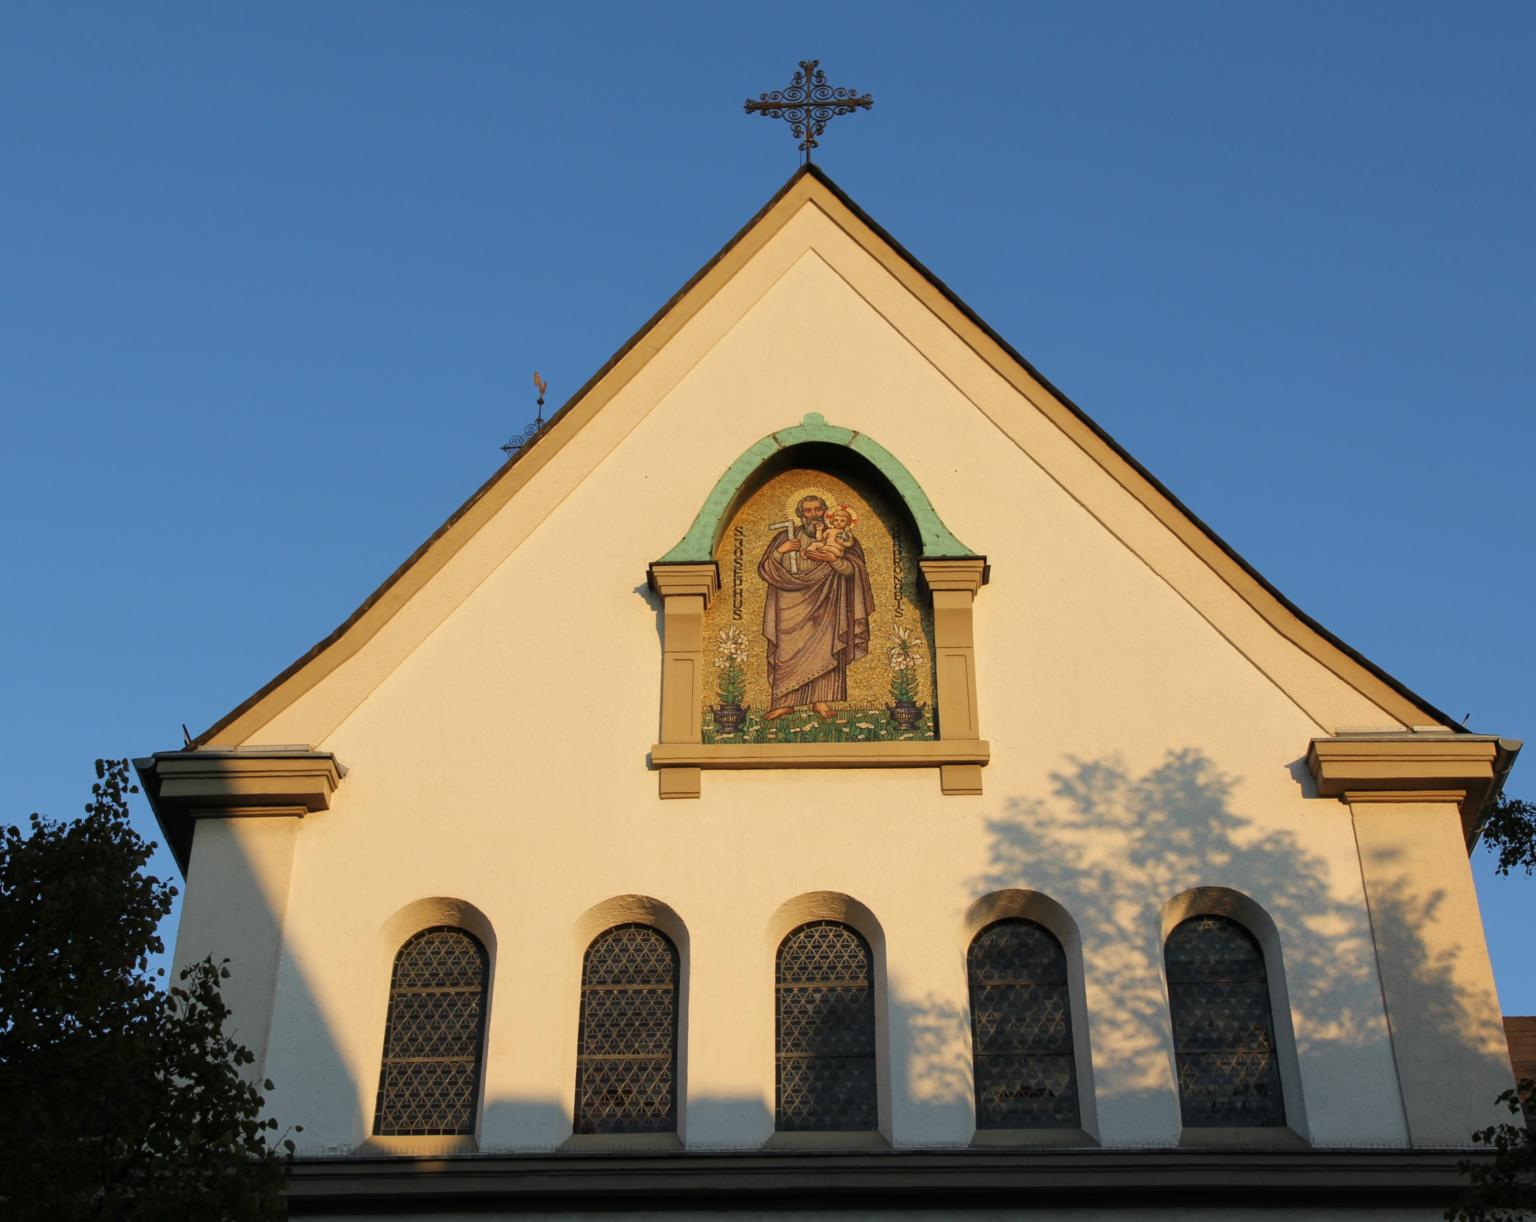 Josefmosaik am Giebel unseres Kirchenportals (c) D. Thiel